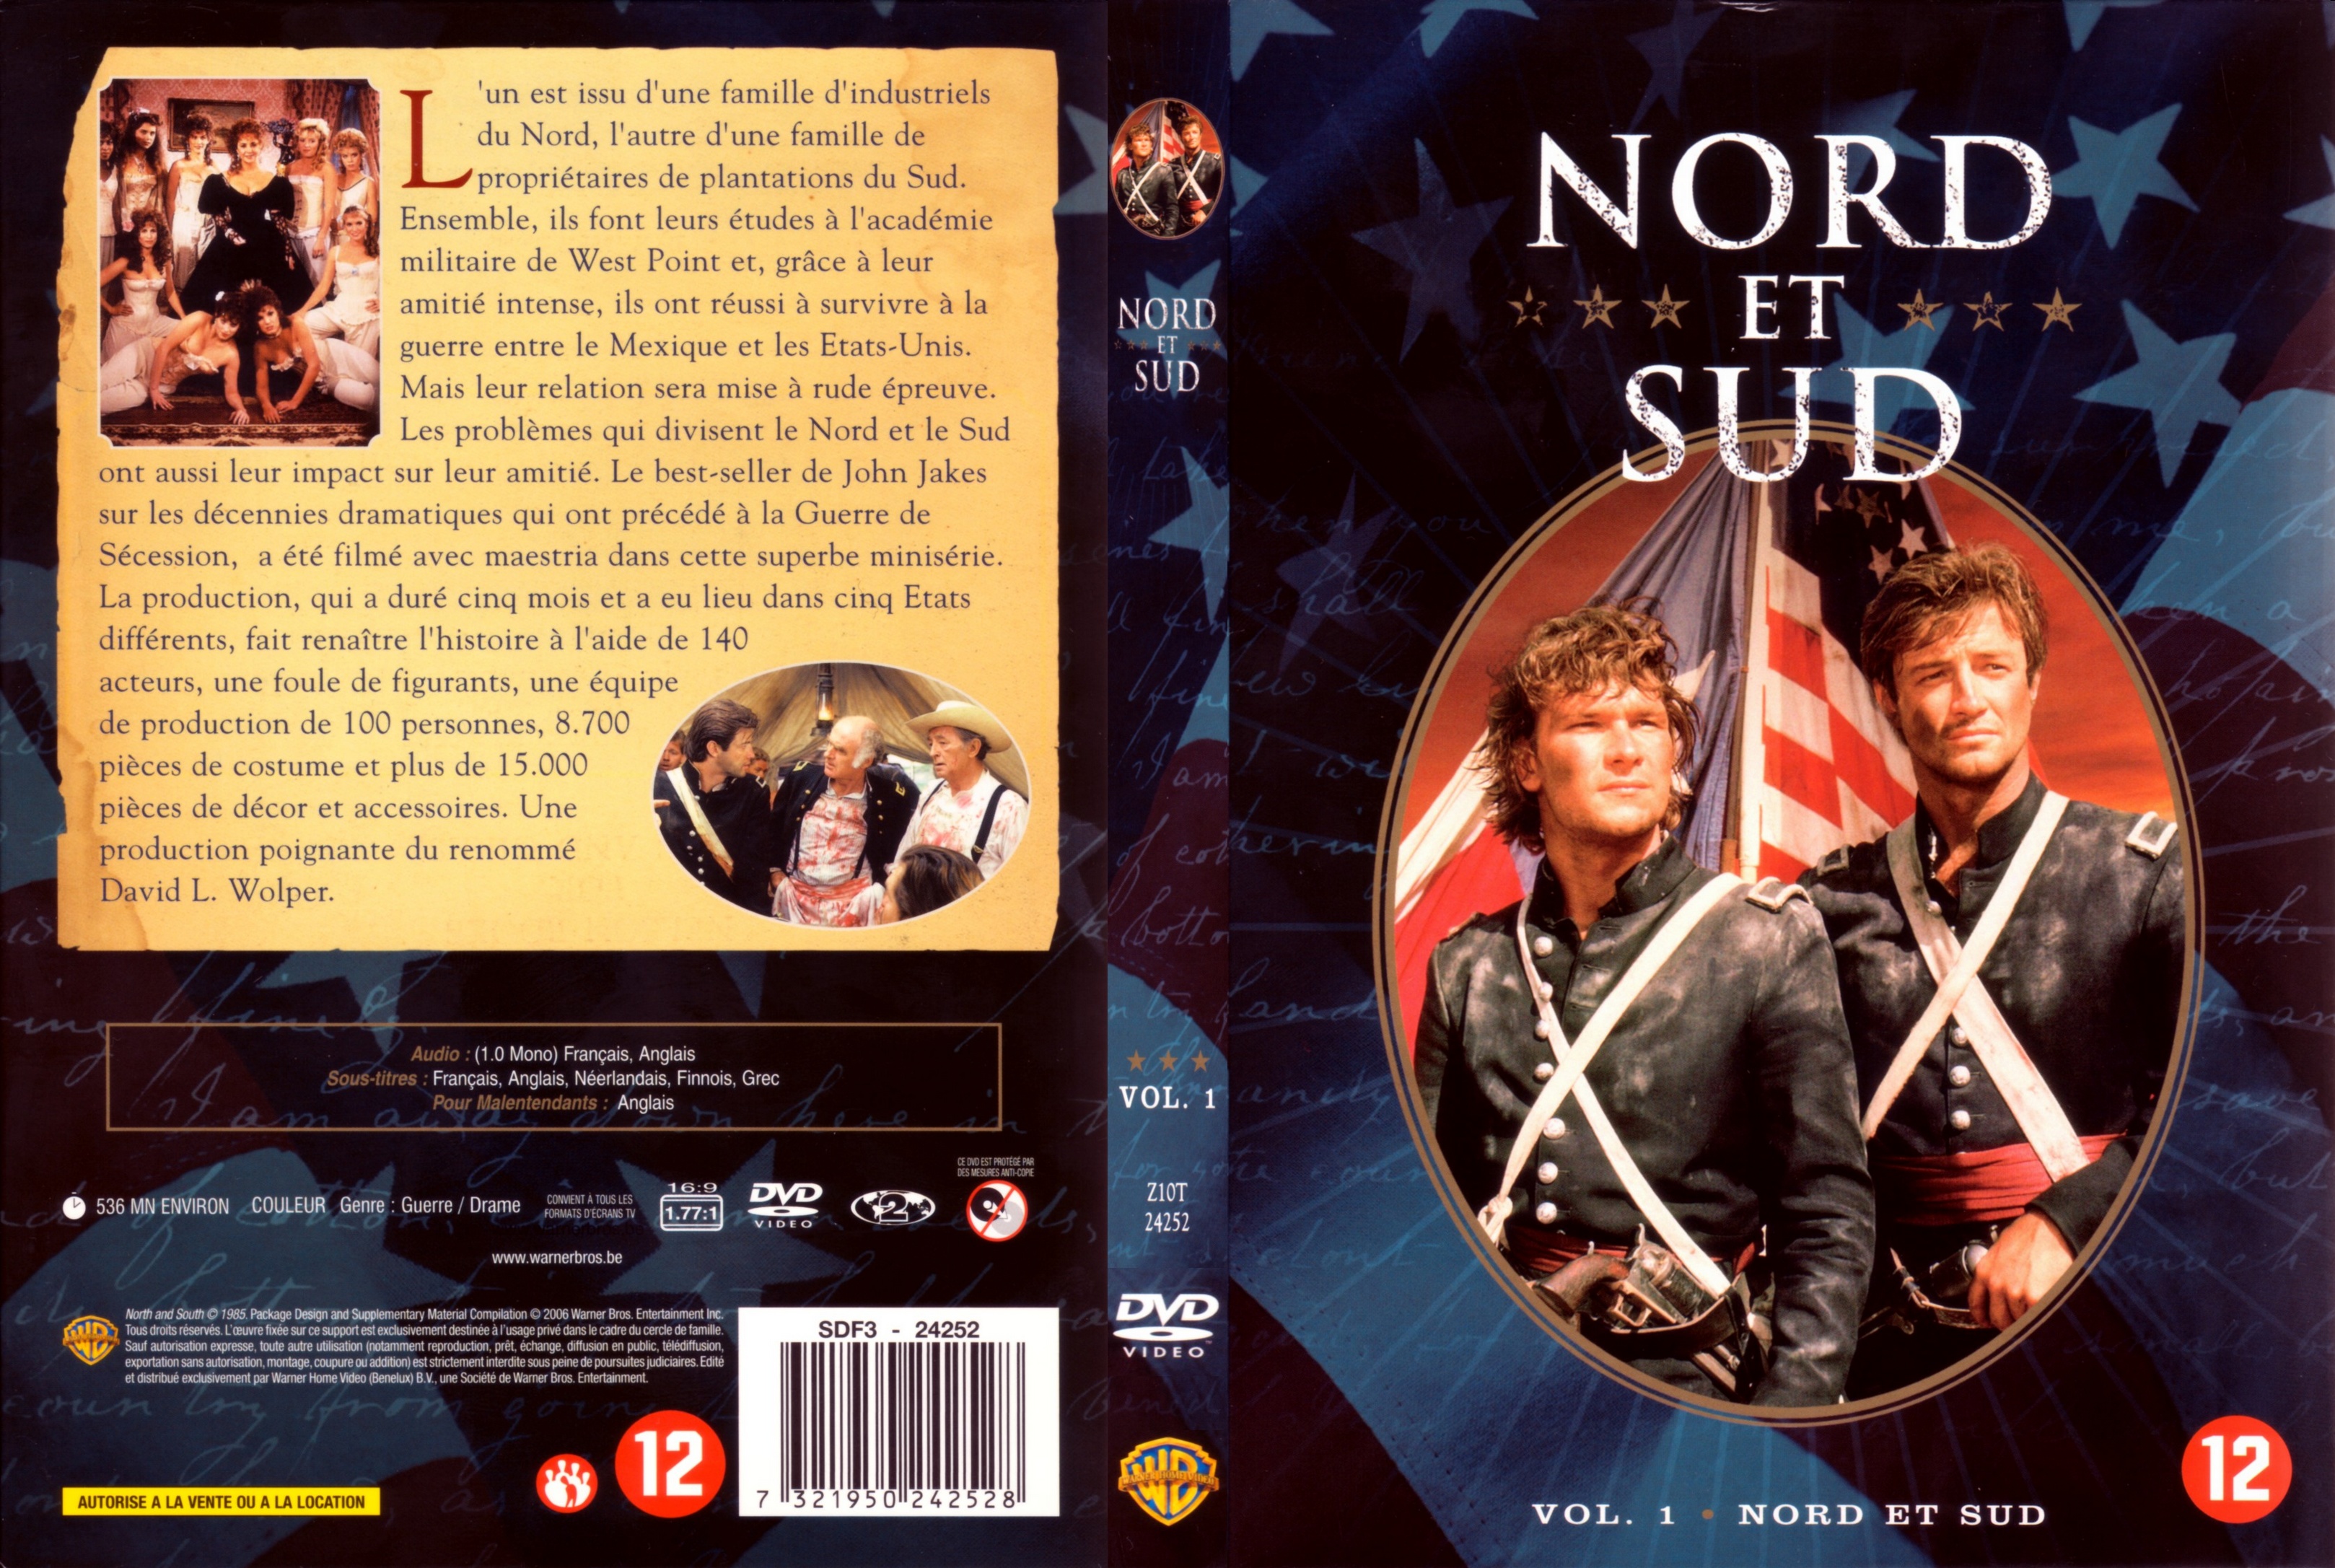 Jaquette DVD Nord et sud vol 1 COFFRET